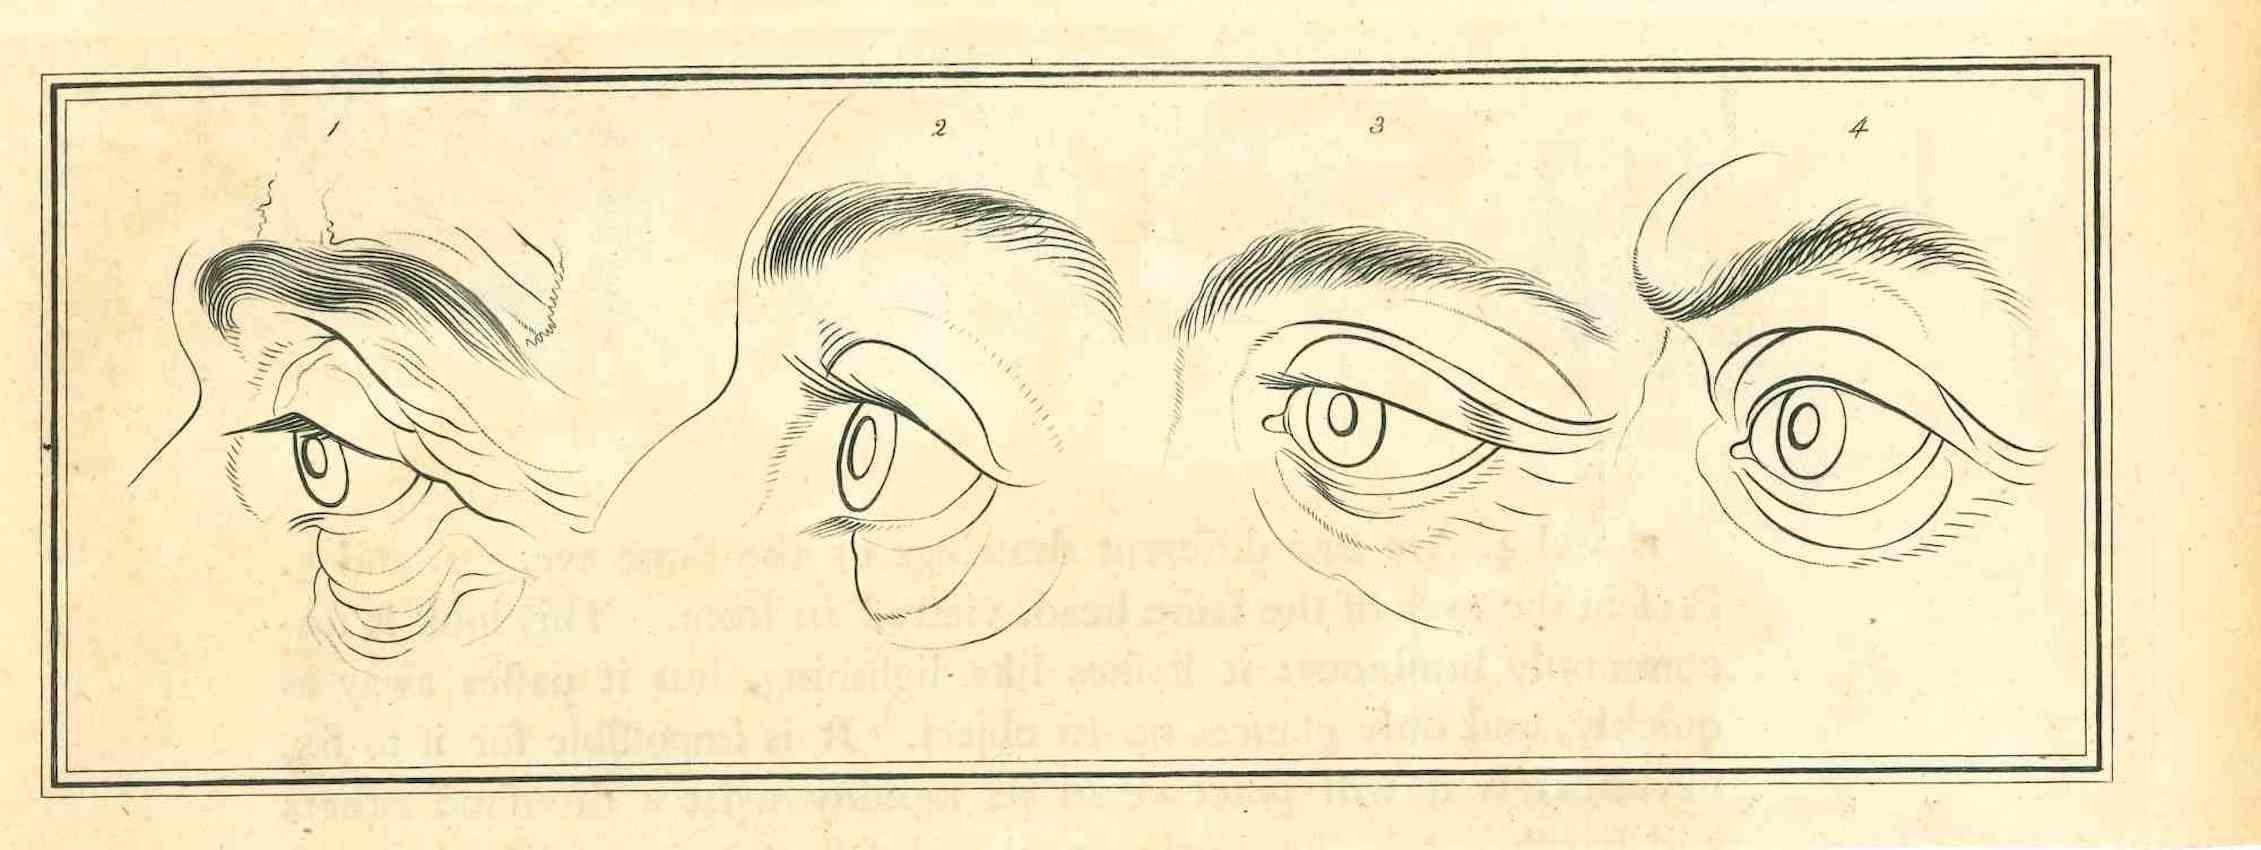 Eyes - The Physiognomy ist eine Original-Radierung von Thomas Holloway für Johann Caspar Lavaters "Essays on Physiognomy, Designed to Promote the Knowledge and the Love of Mankind", London, Bensley, 1810. 

Gute Bedingungen.

Johann Caspar Lavater